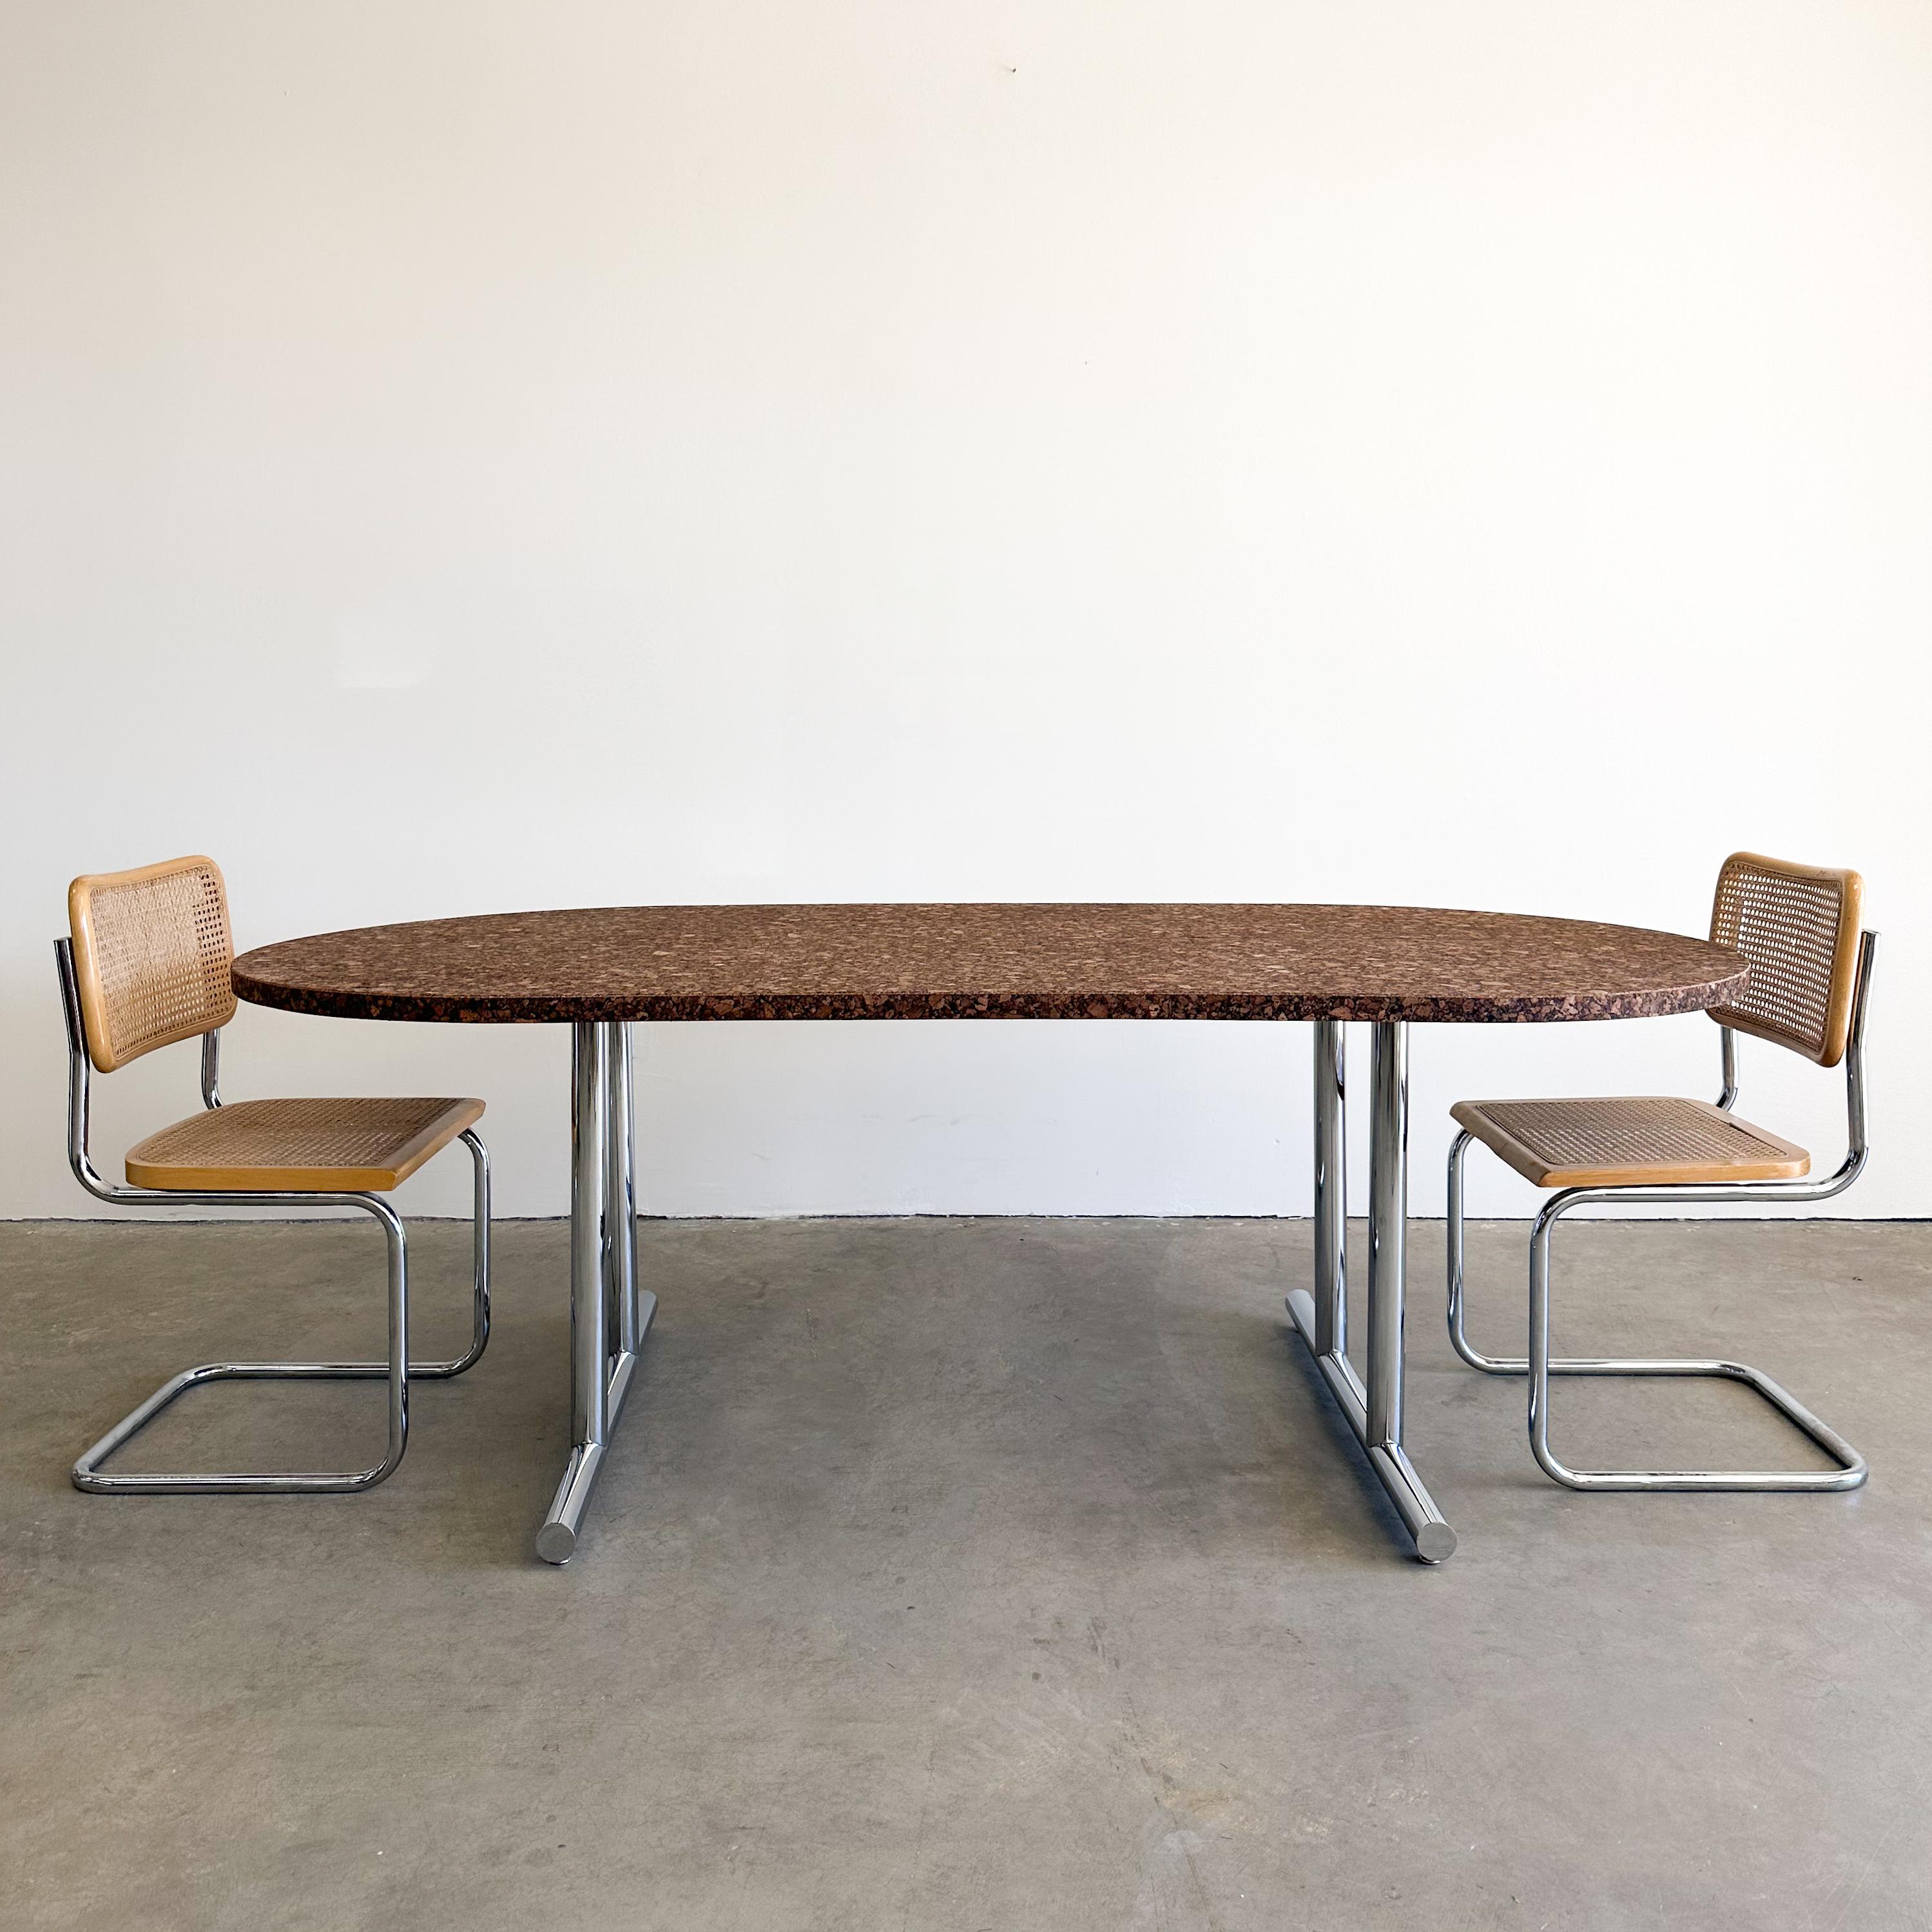 Table de salle à manger ovale vintage en liège.

Cette table peut servir à de multiples usages. Elle peut être utilisée comme table de conférence pour des réunions professionnelles, offrant une esthétique distincte et créative, ou comme table de